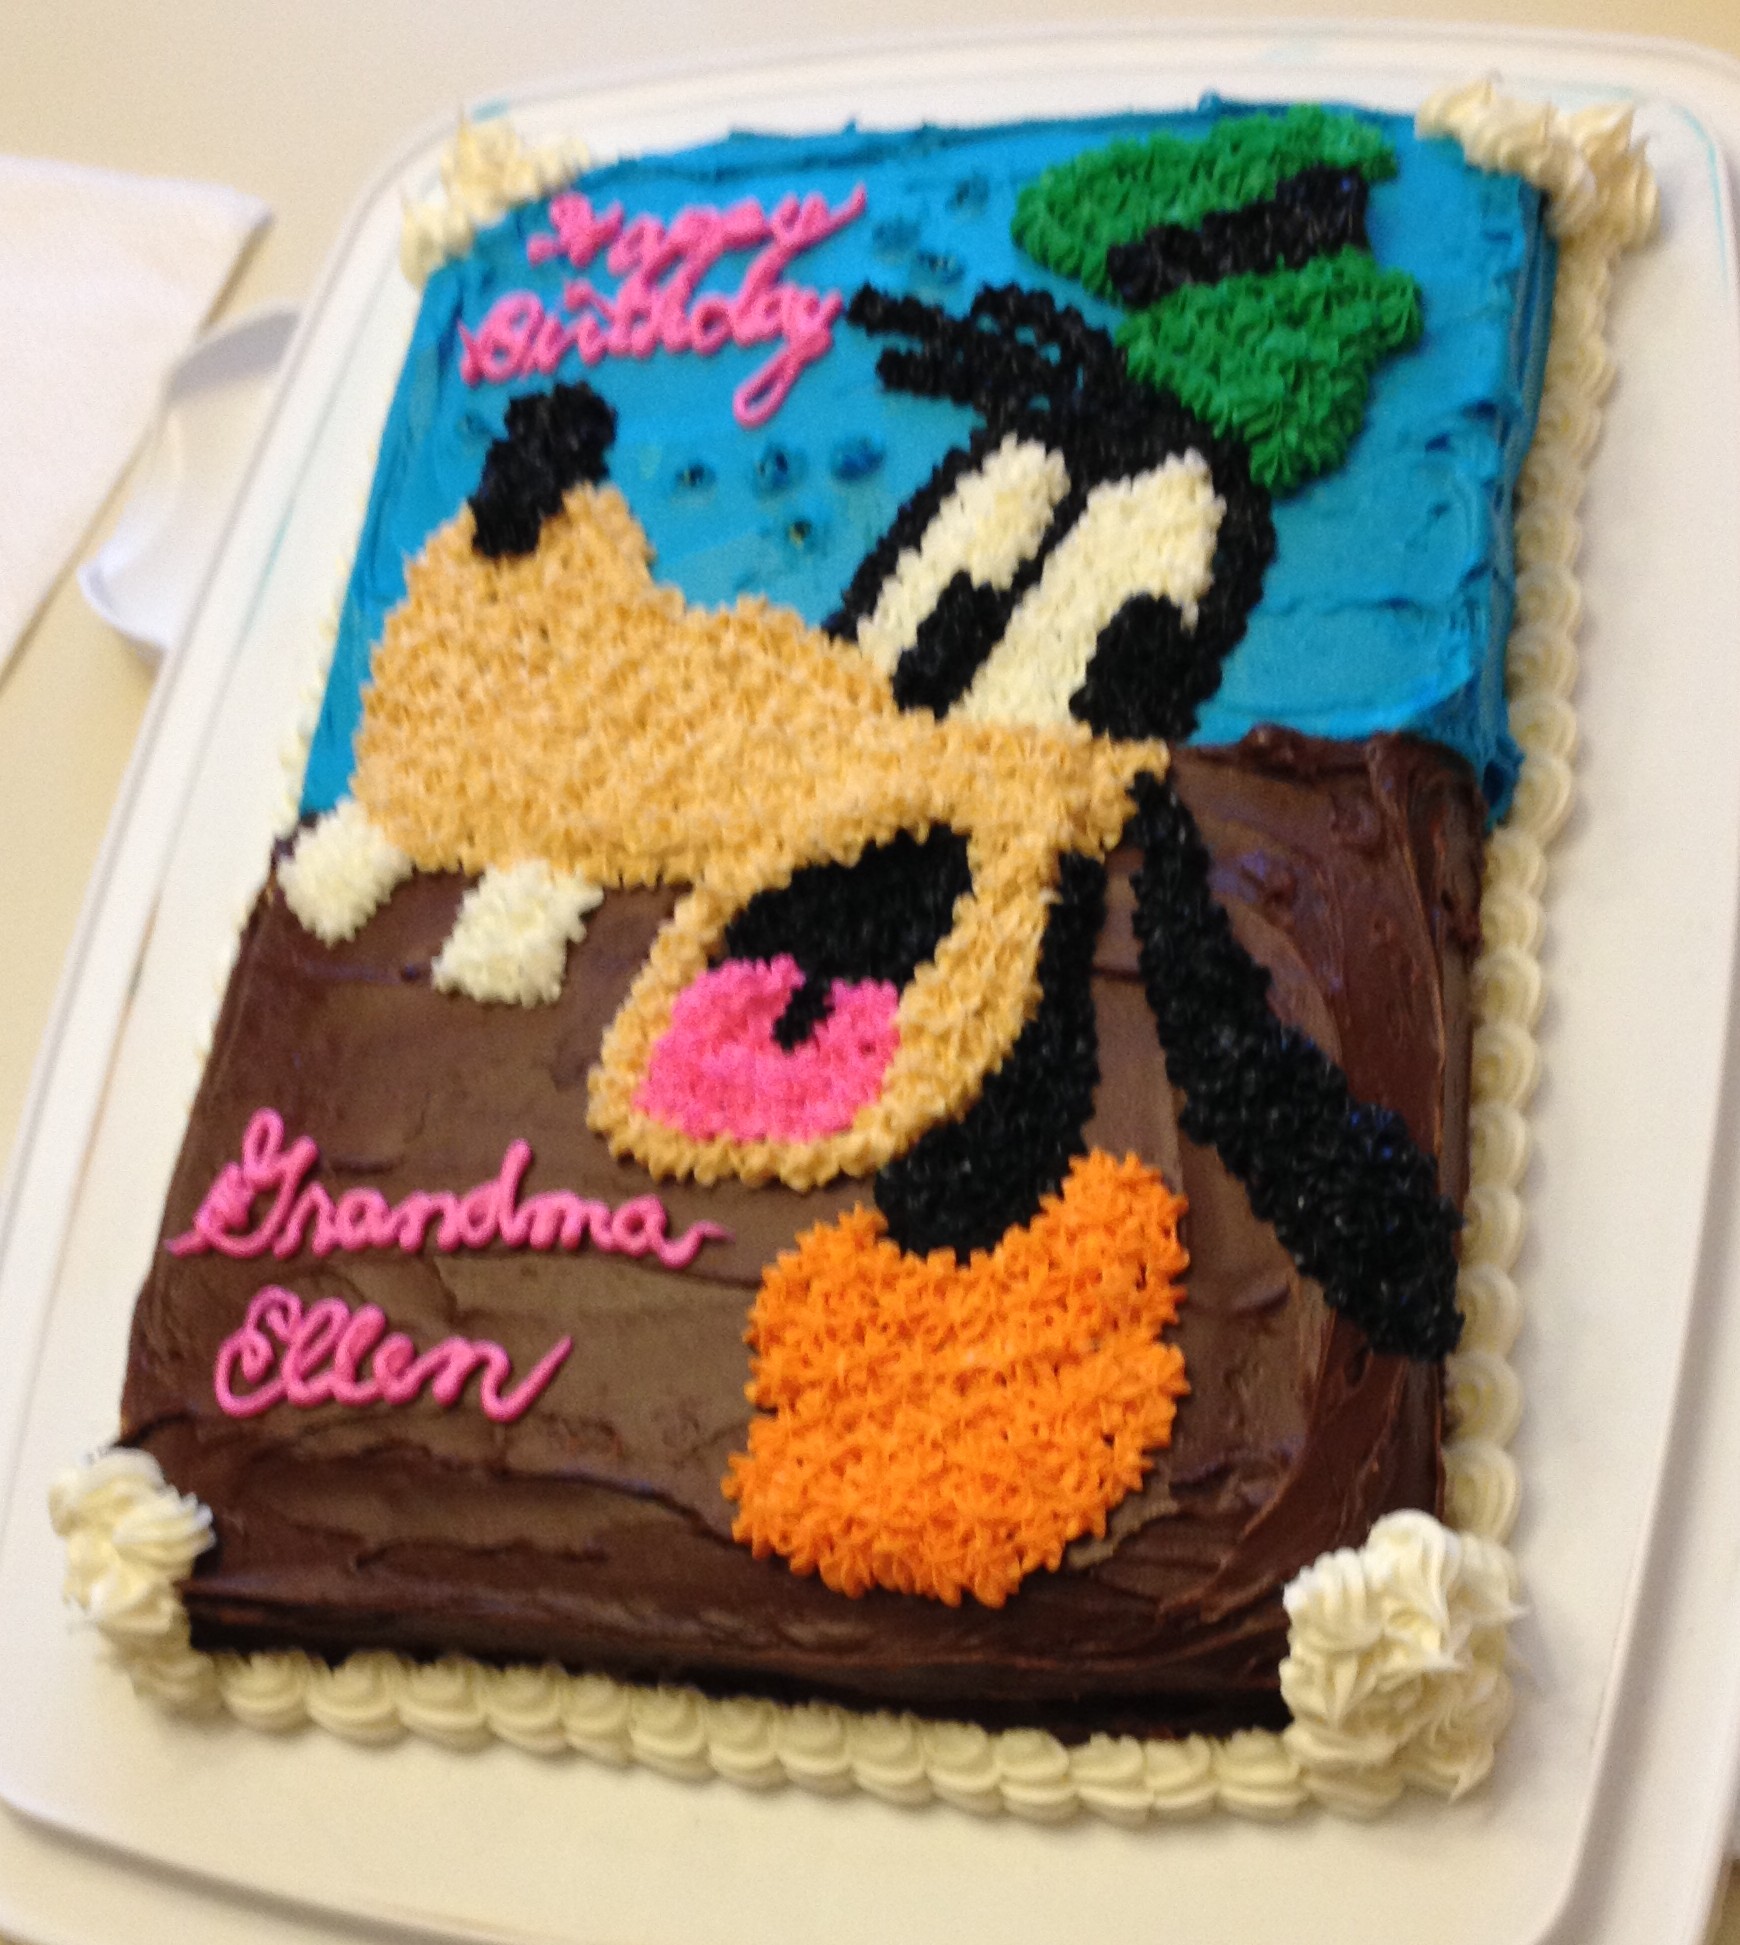 Goofy Disney cake